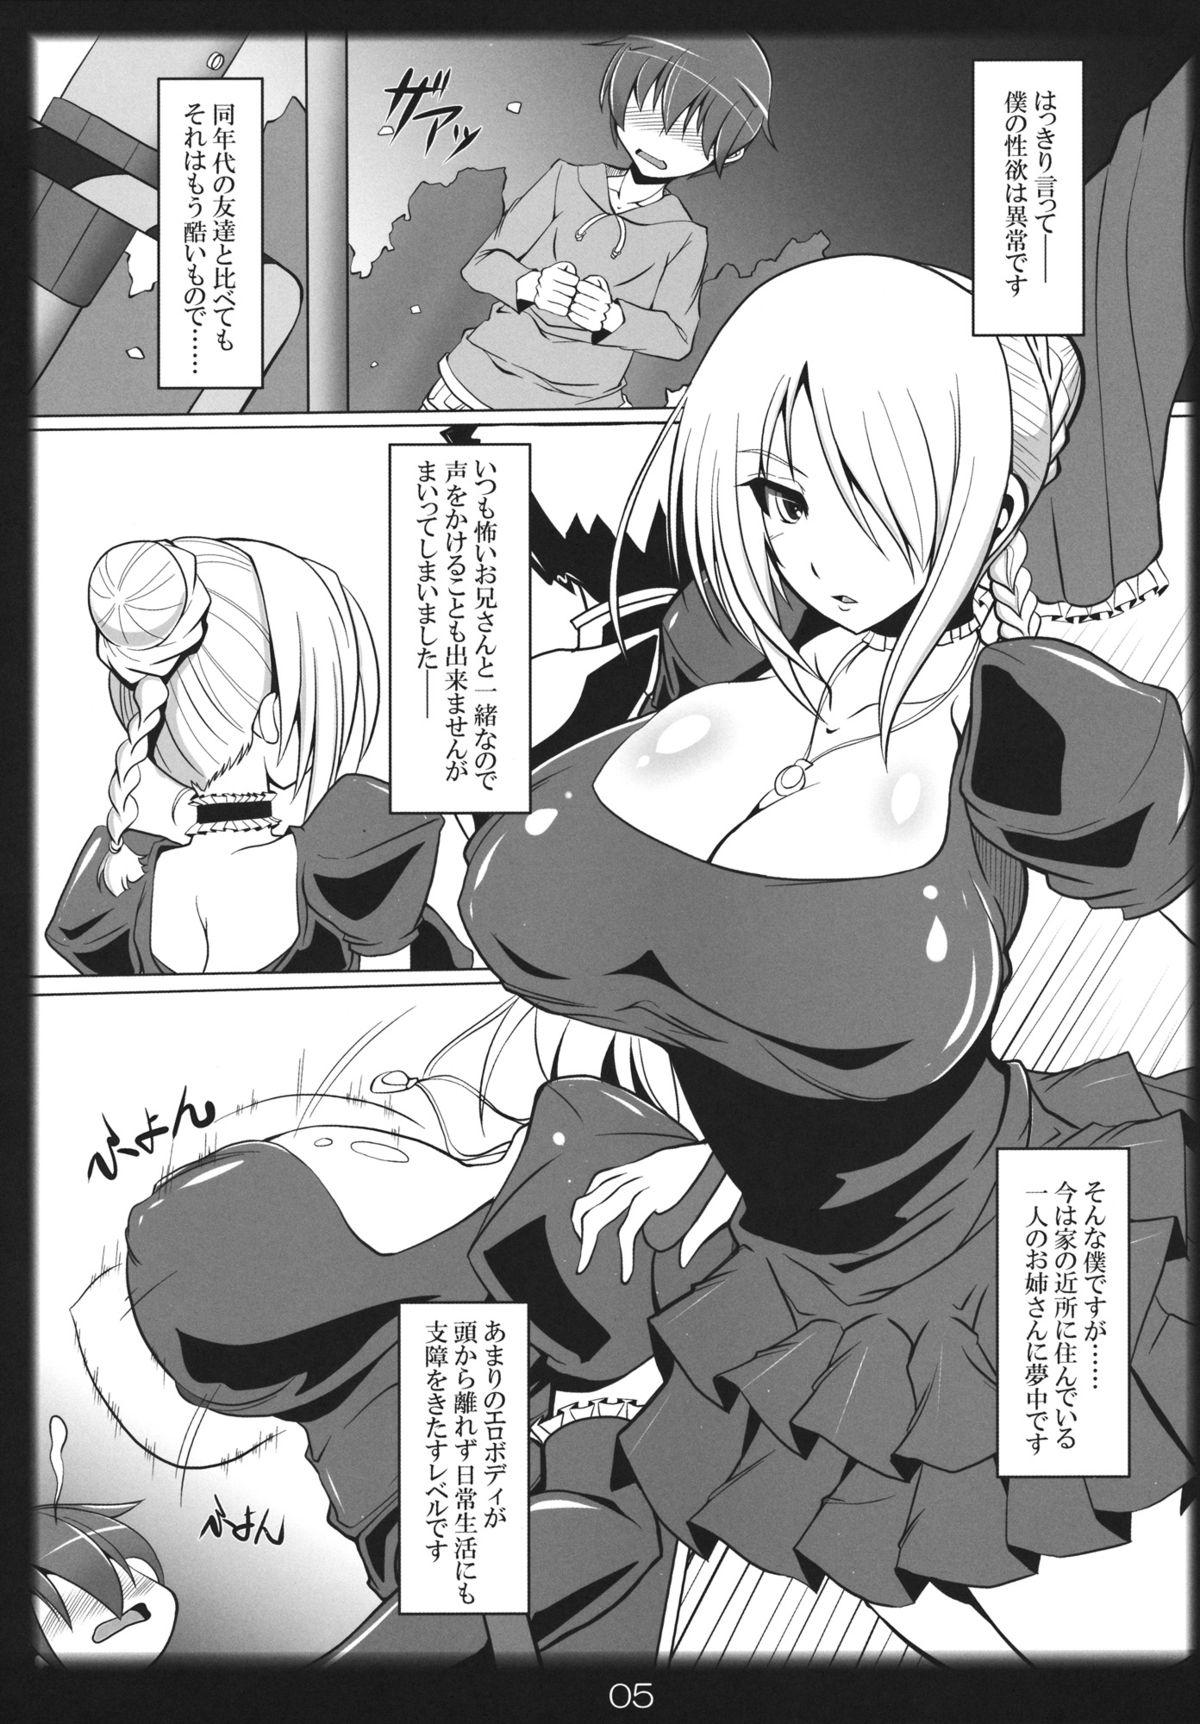 Slutty Yobaretemasuyo, Hilda-san. - Beelzebub Close Up - Page 4